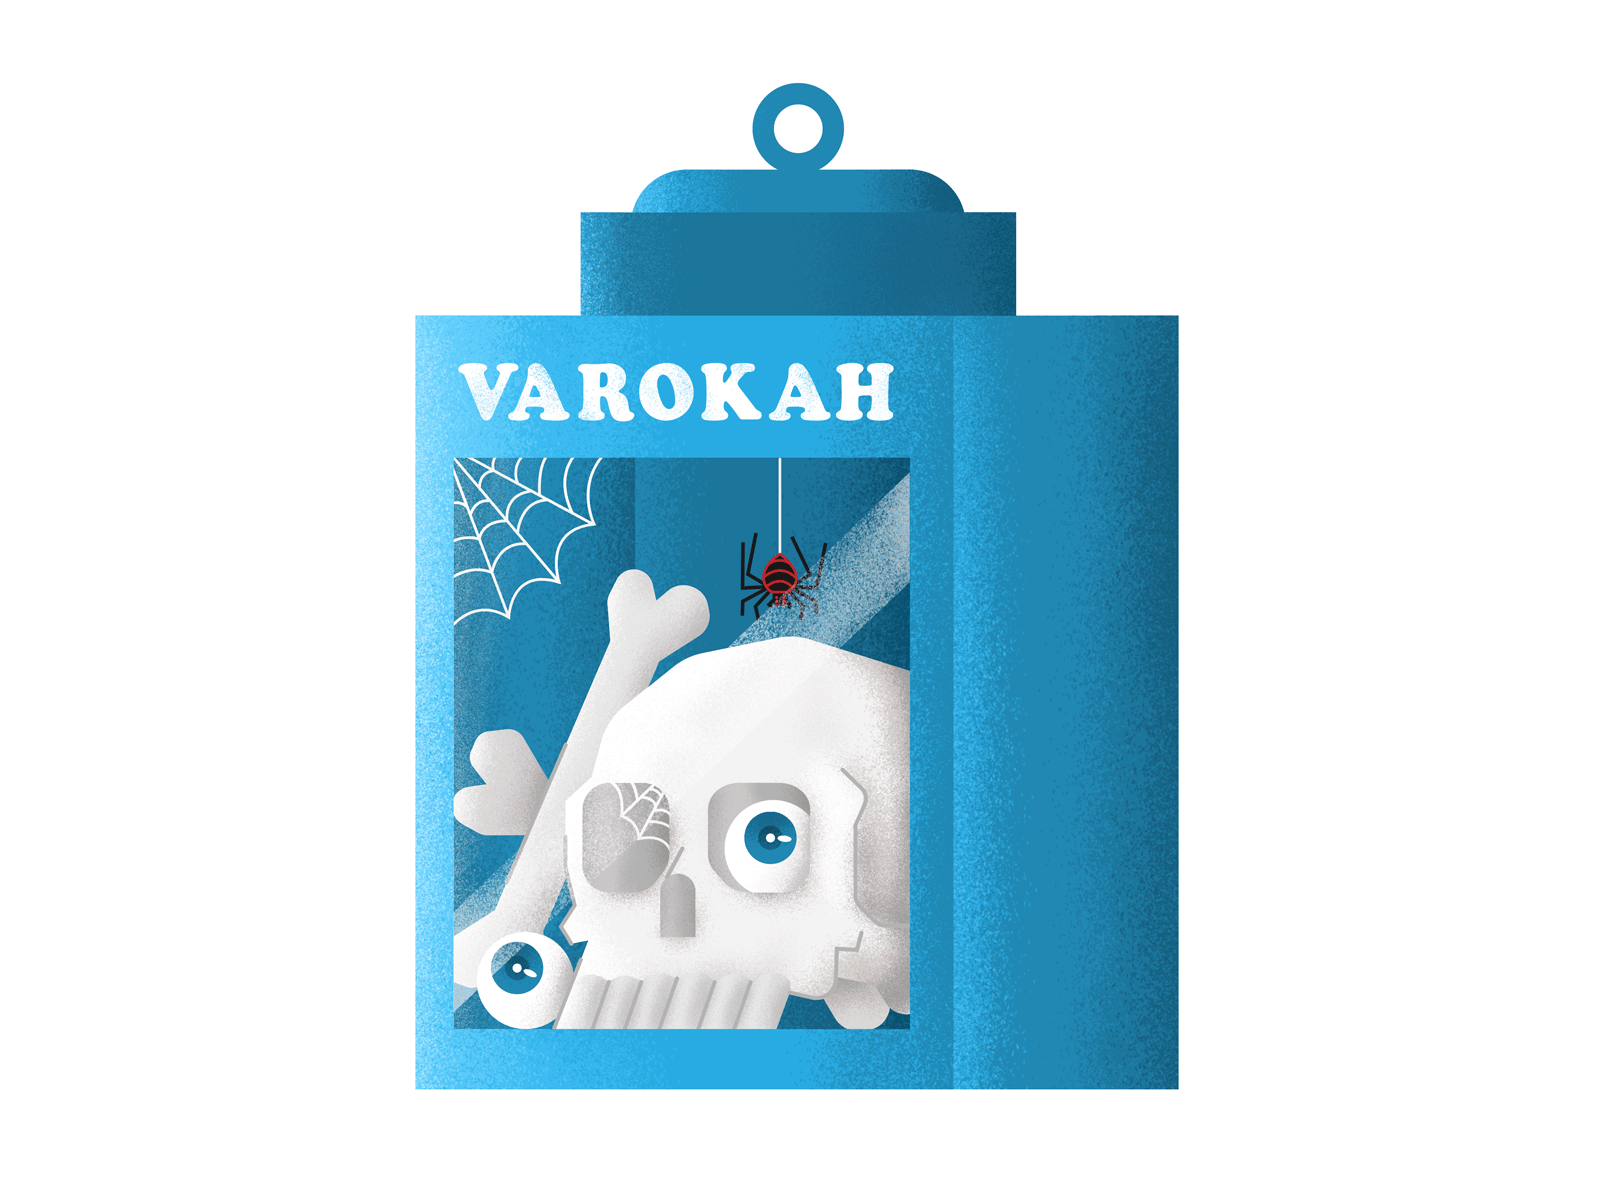 Varokah Cracker Box cult cute food horror illustration skull stickers